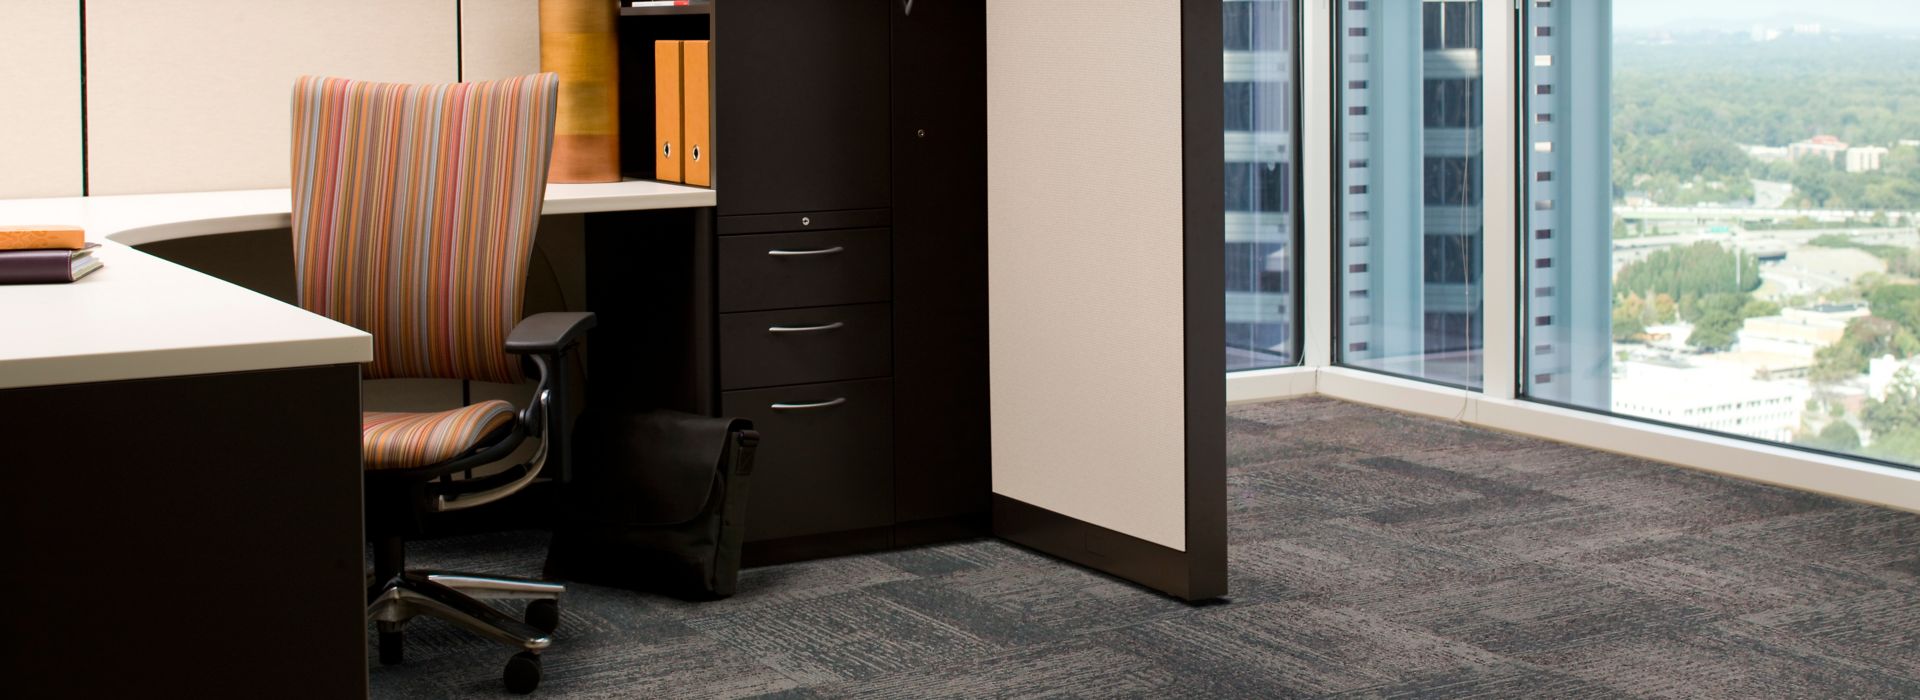 Interface Plain Weave carpet tile in private office imagen número 1